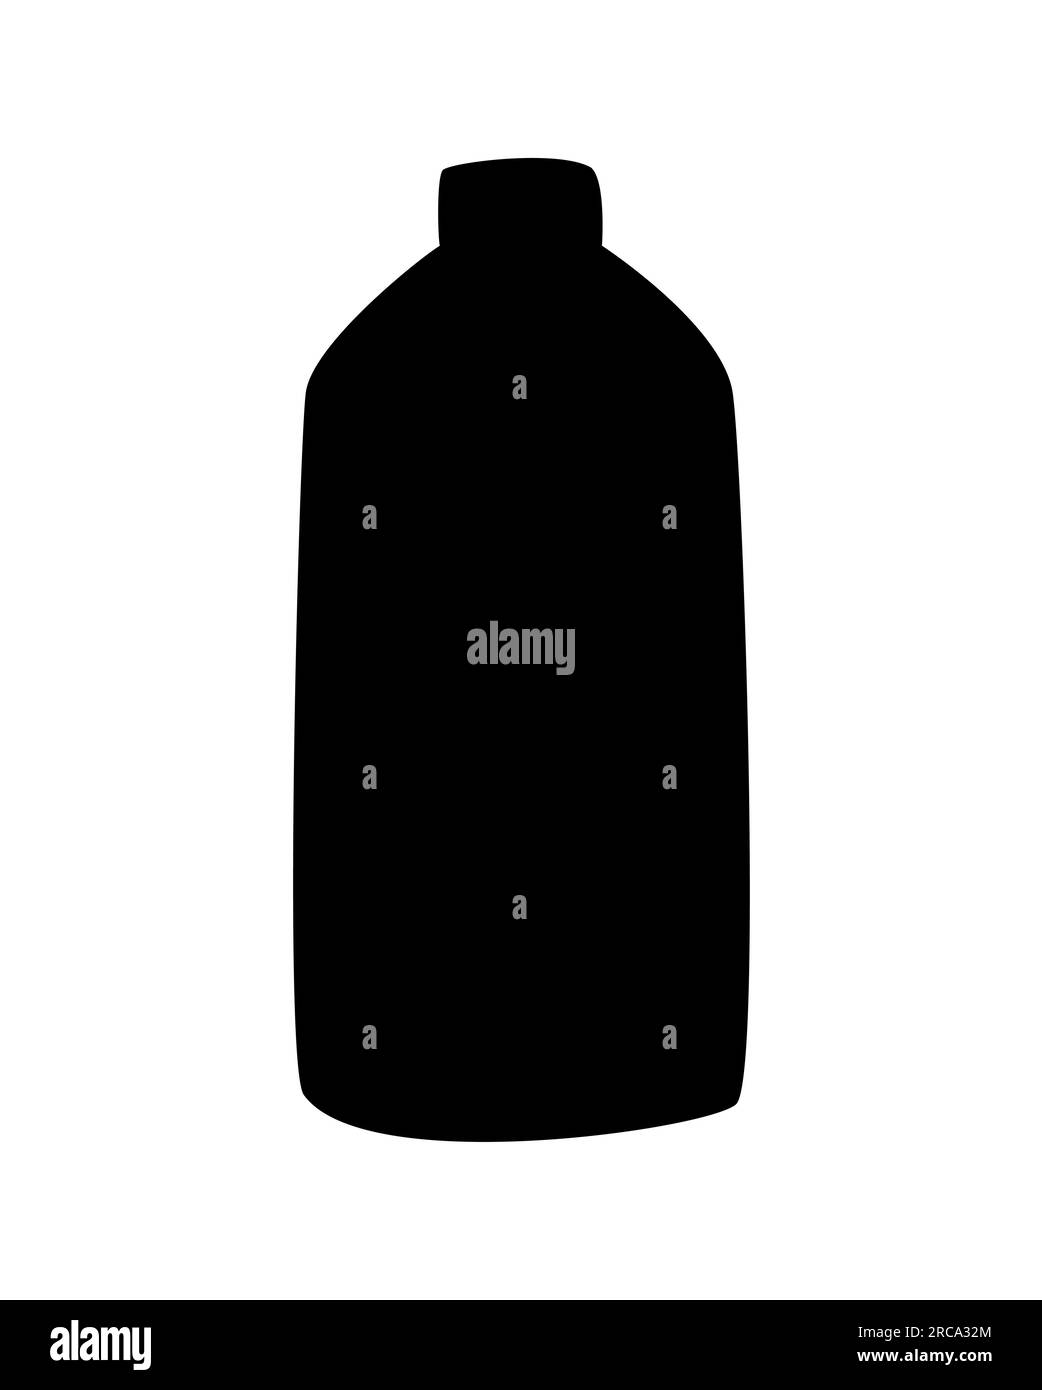 Schwarze Silhouette eines Plastikflaschen-Symbols. Behälter für Wasser, Flüssigkeit und Öl. Flache Vektordarstellung isoliert auf weißem Hintergrund Stock Vektor